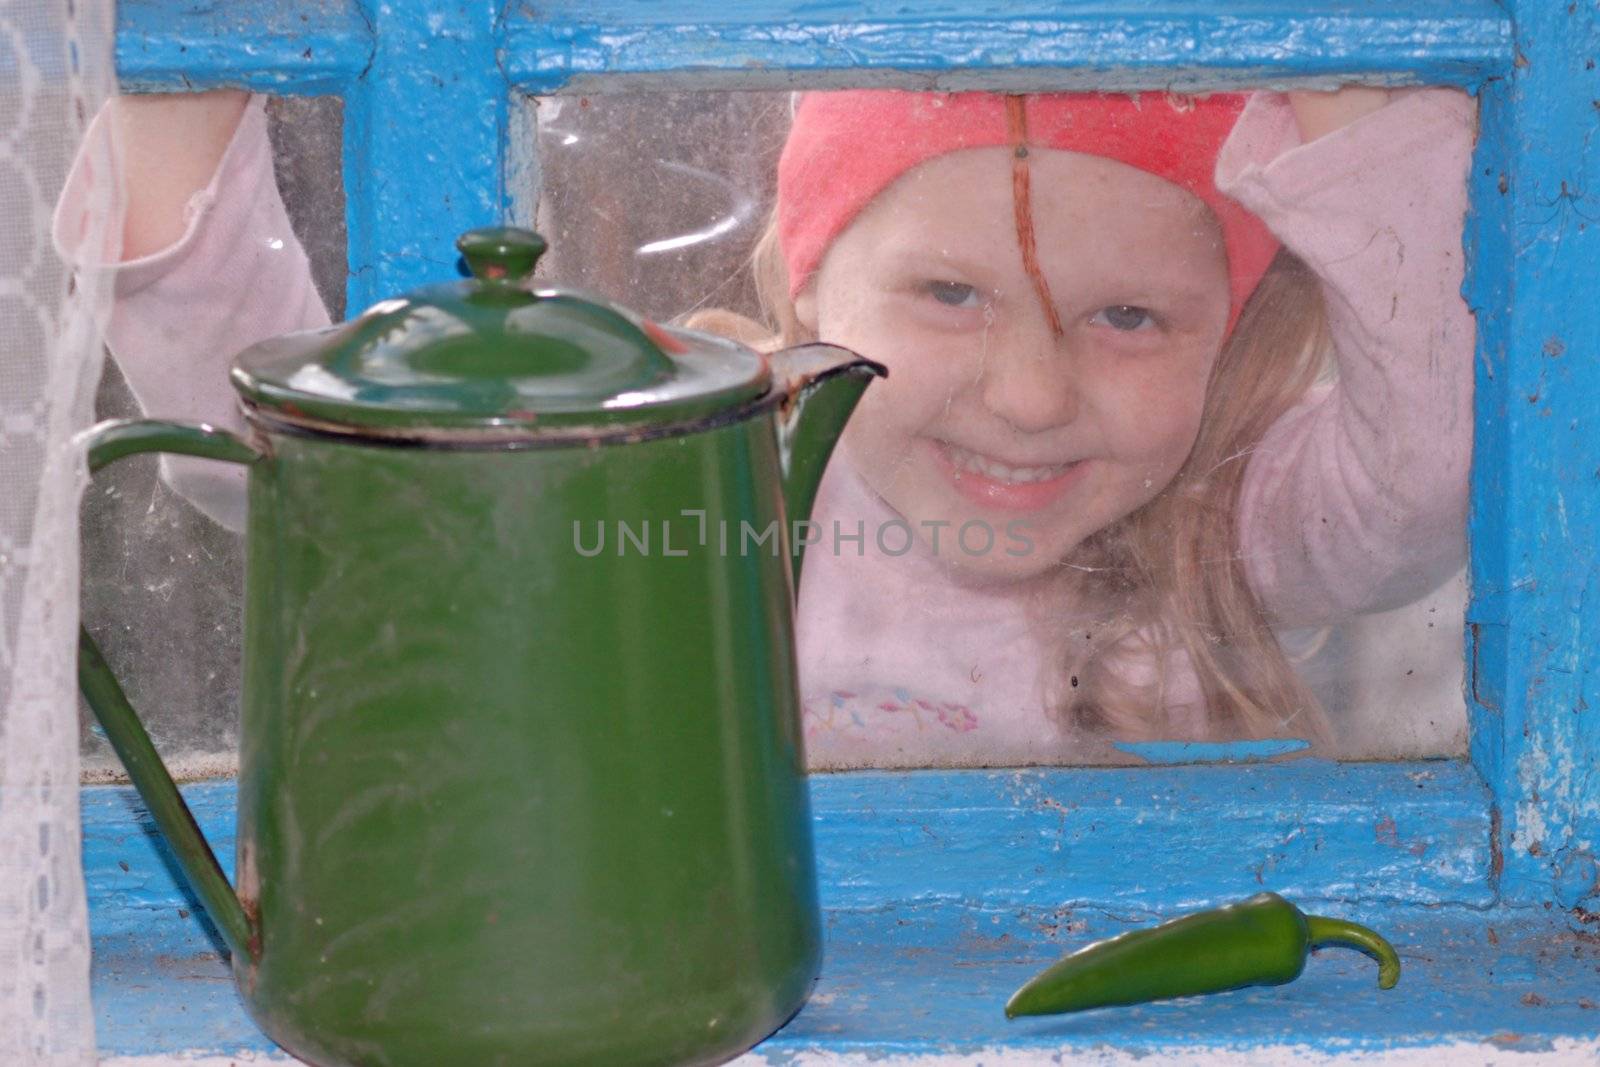 Girl and teapot by velkol